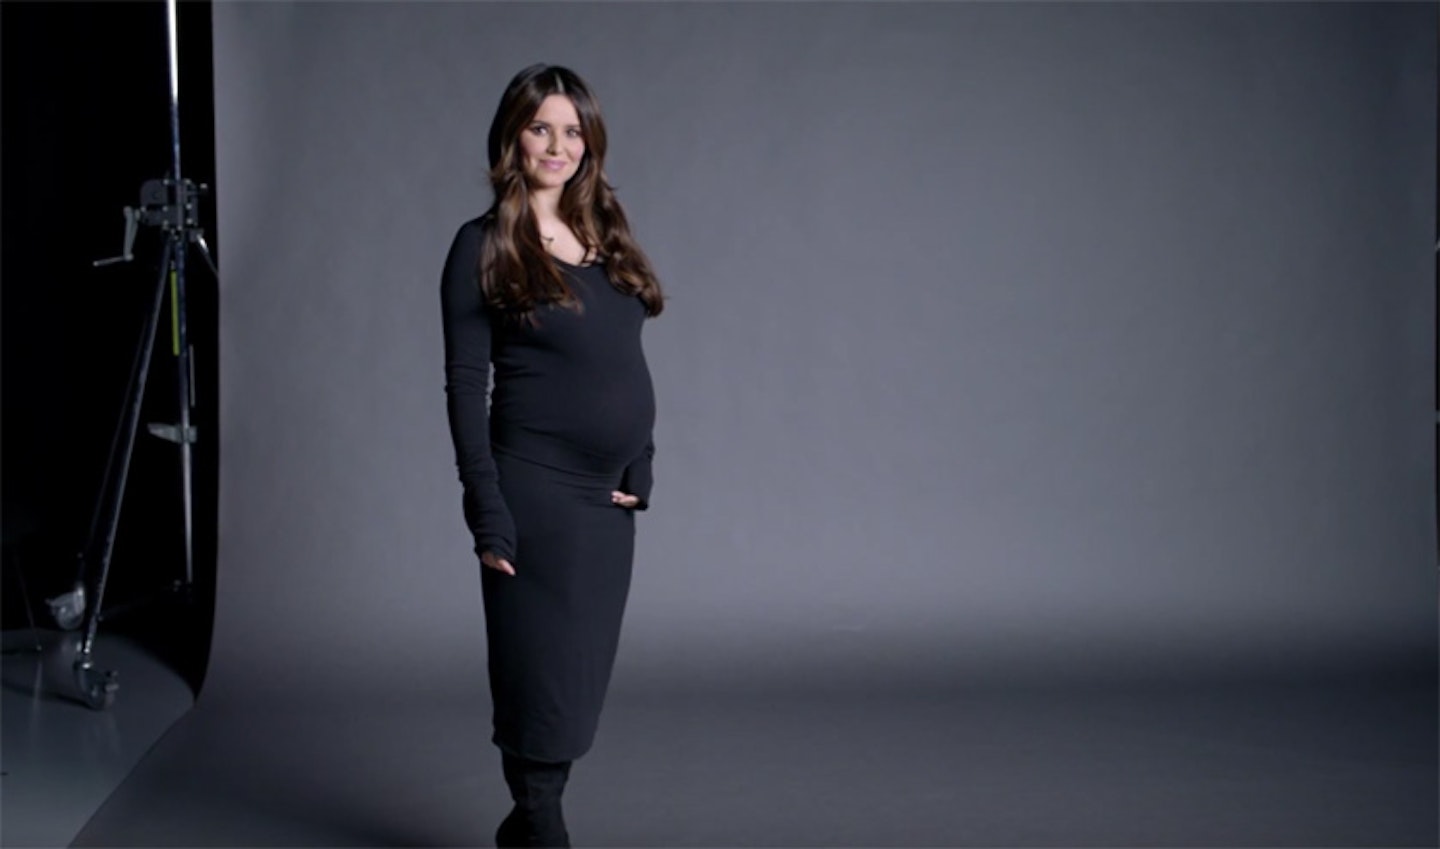 Cheryl-pregnancy-struggles